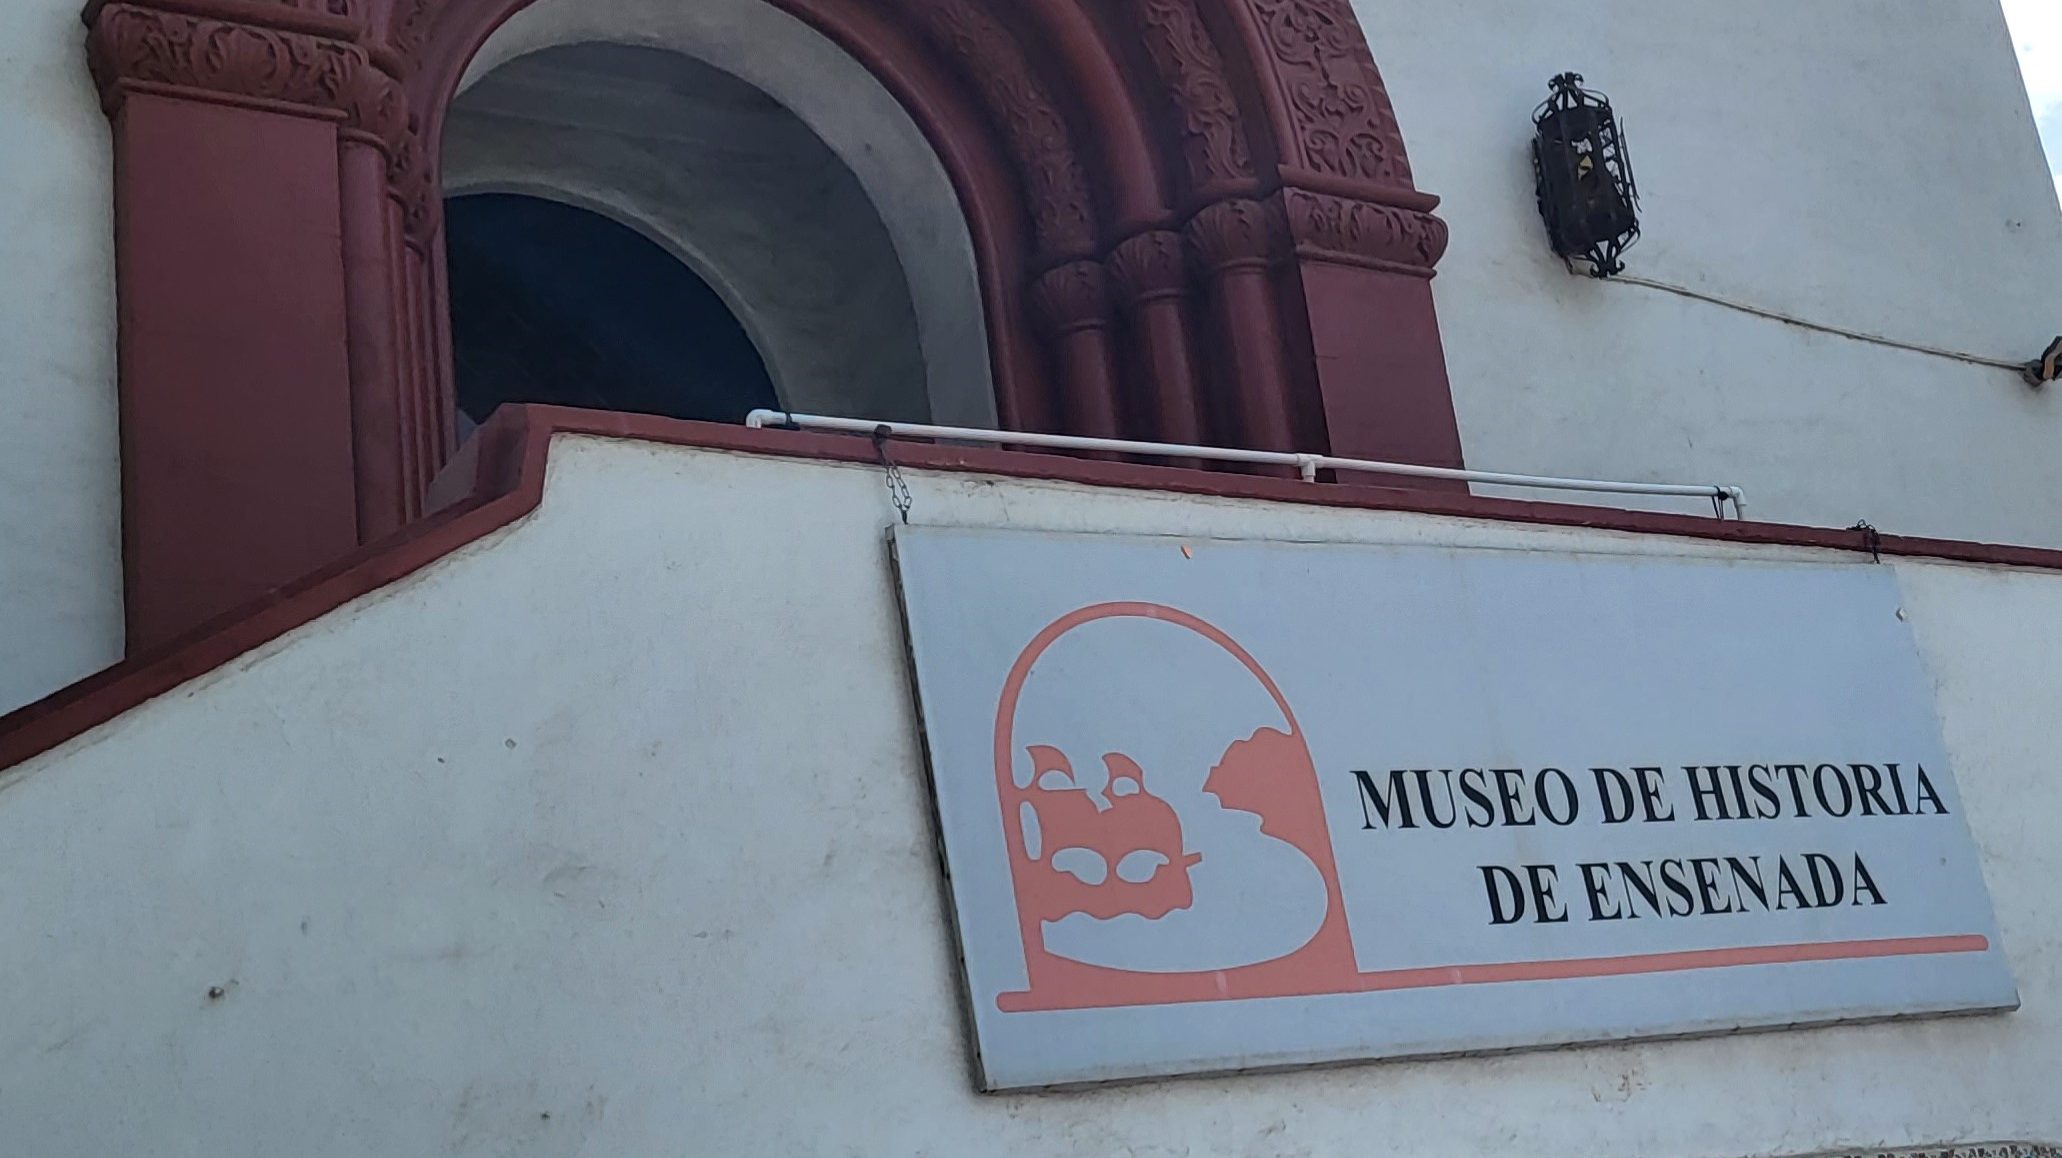 A sign in front of the entrance to the building reading "Museo de Historia de Ensenada."